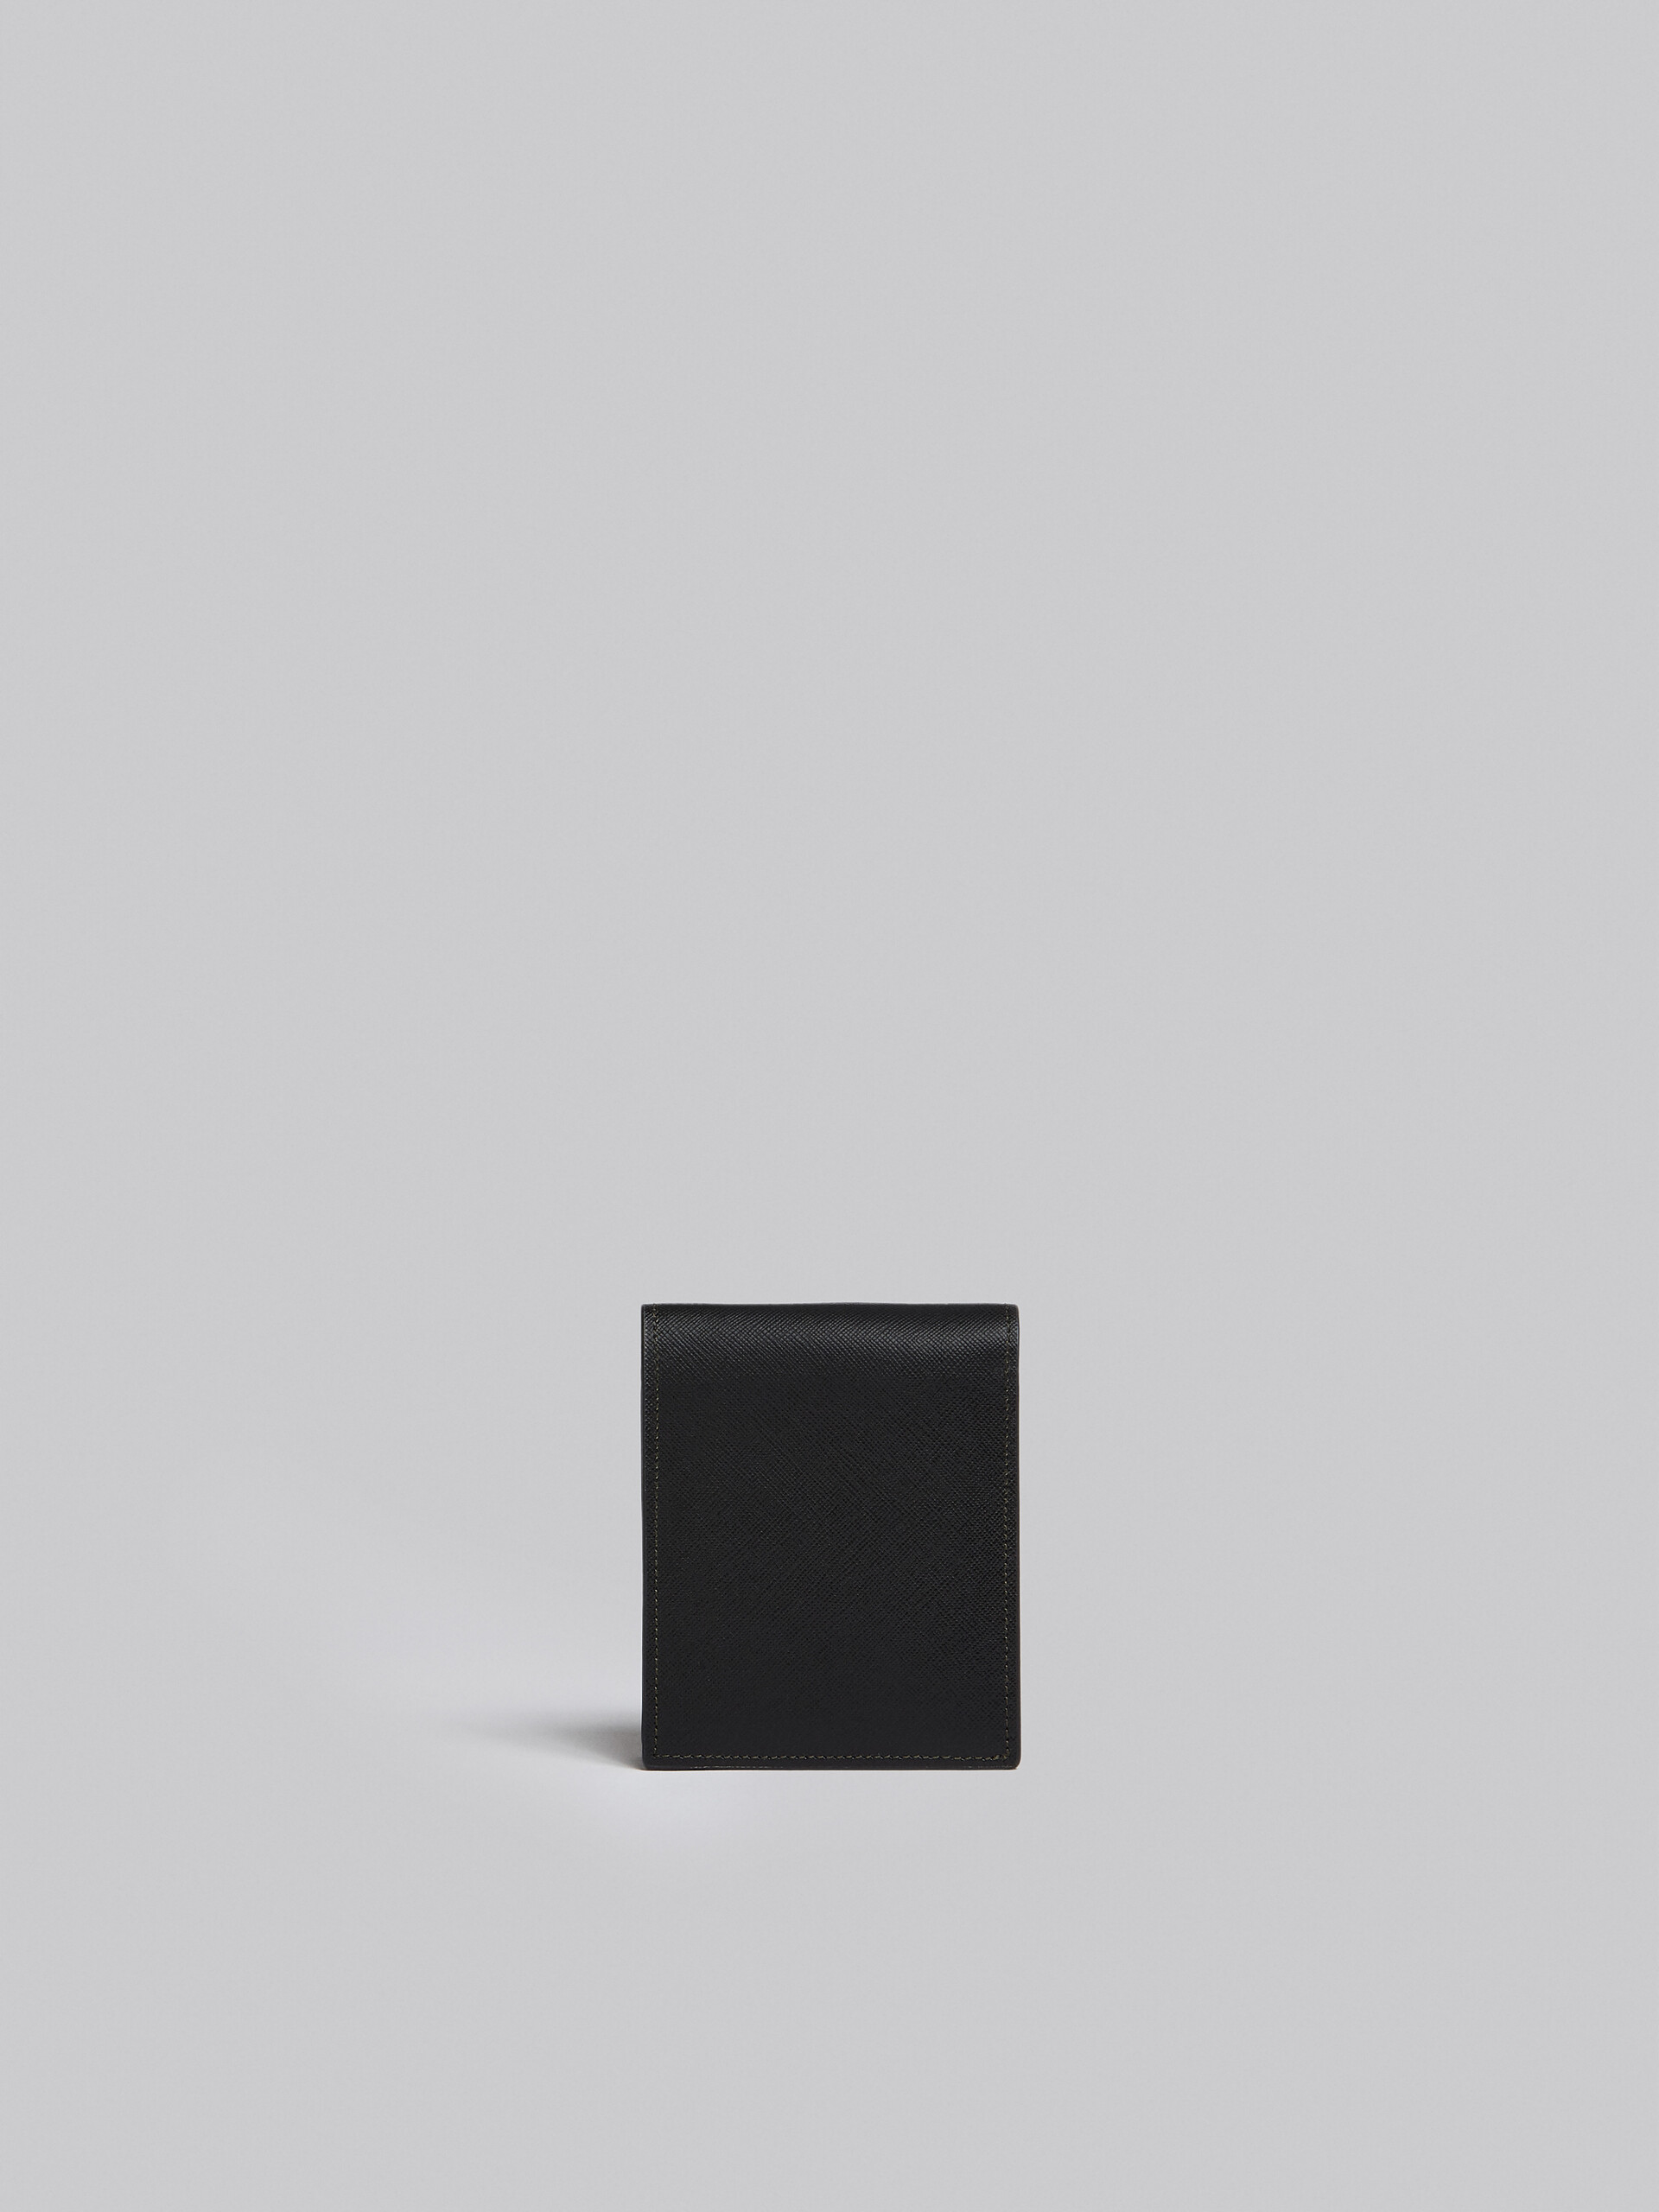 ブルーとブラック サフィアーノレザー製 二つ折りウォレット - 財布 - Image 3